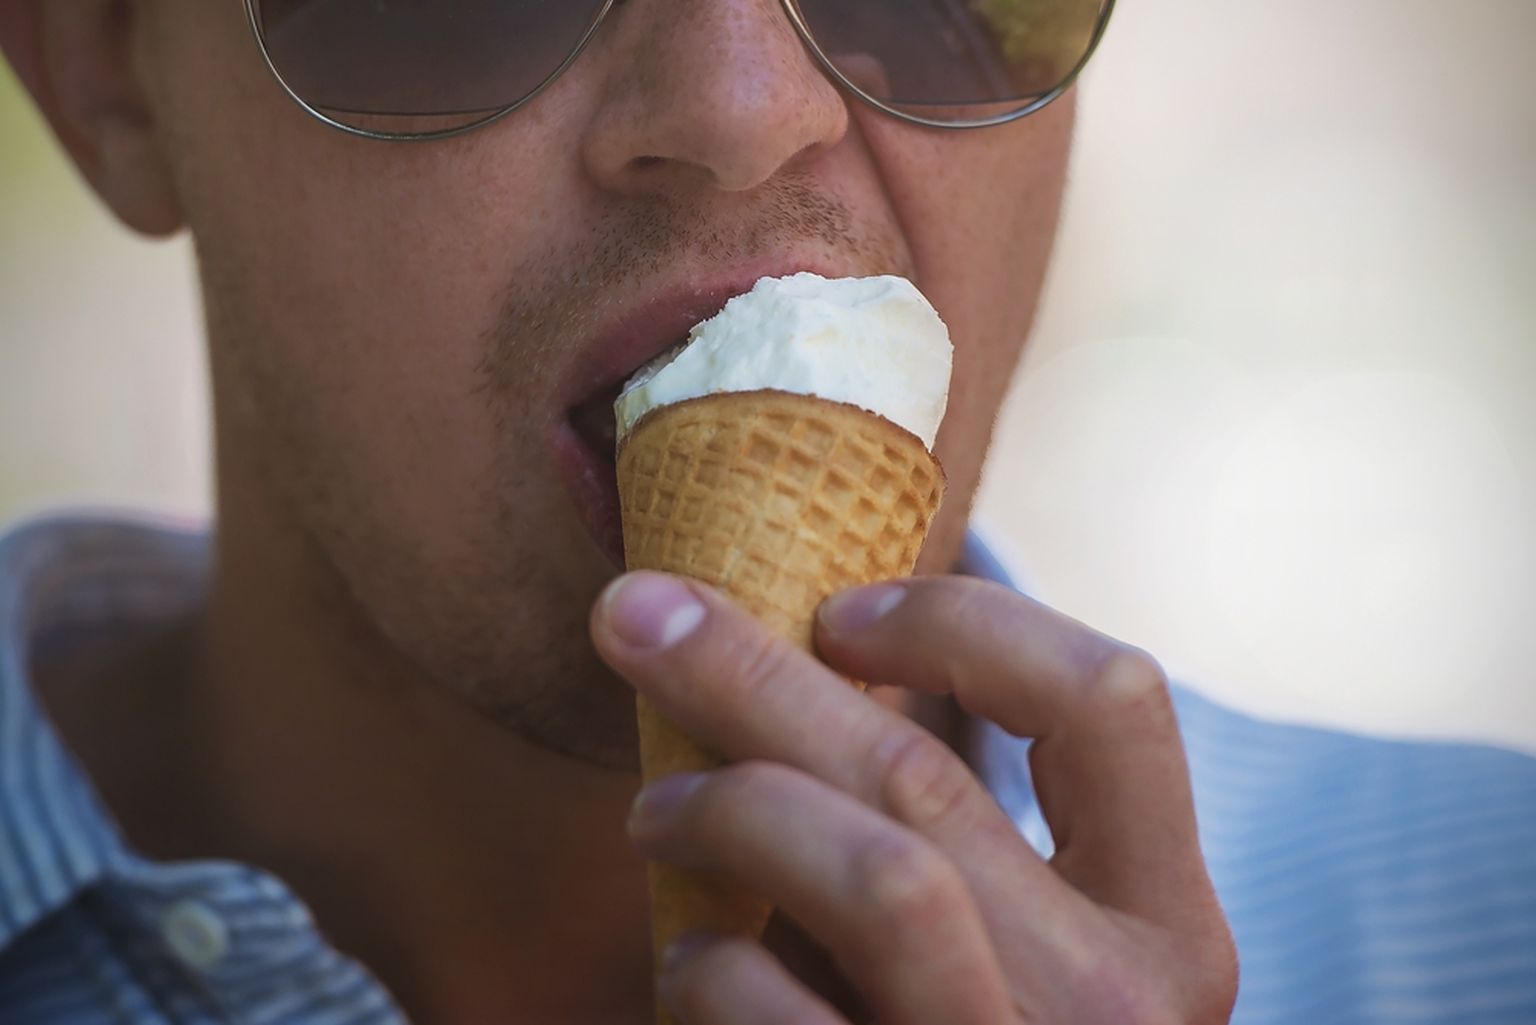 Mees sööb jäätist. Pilt on illustreeriv.